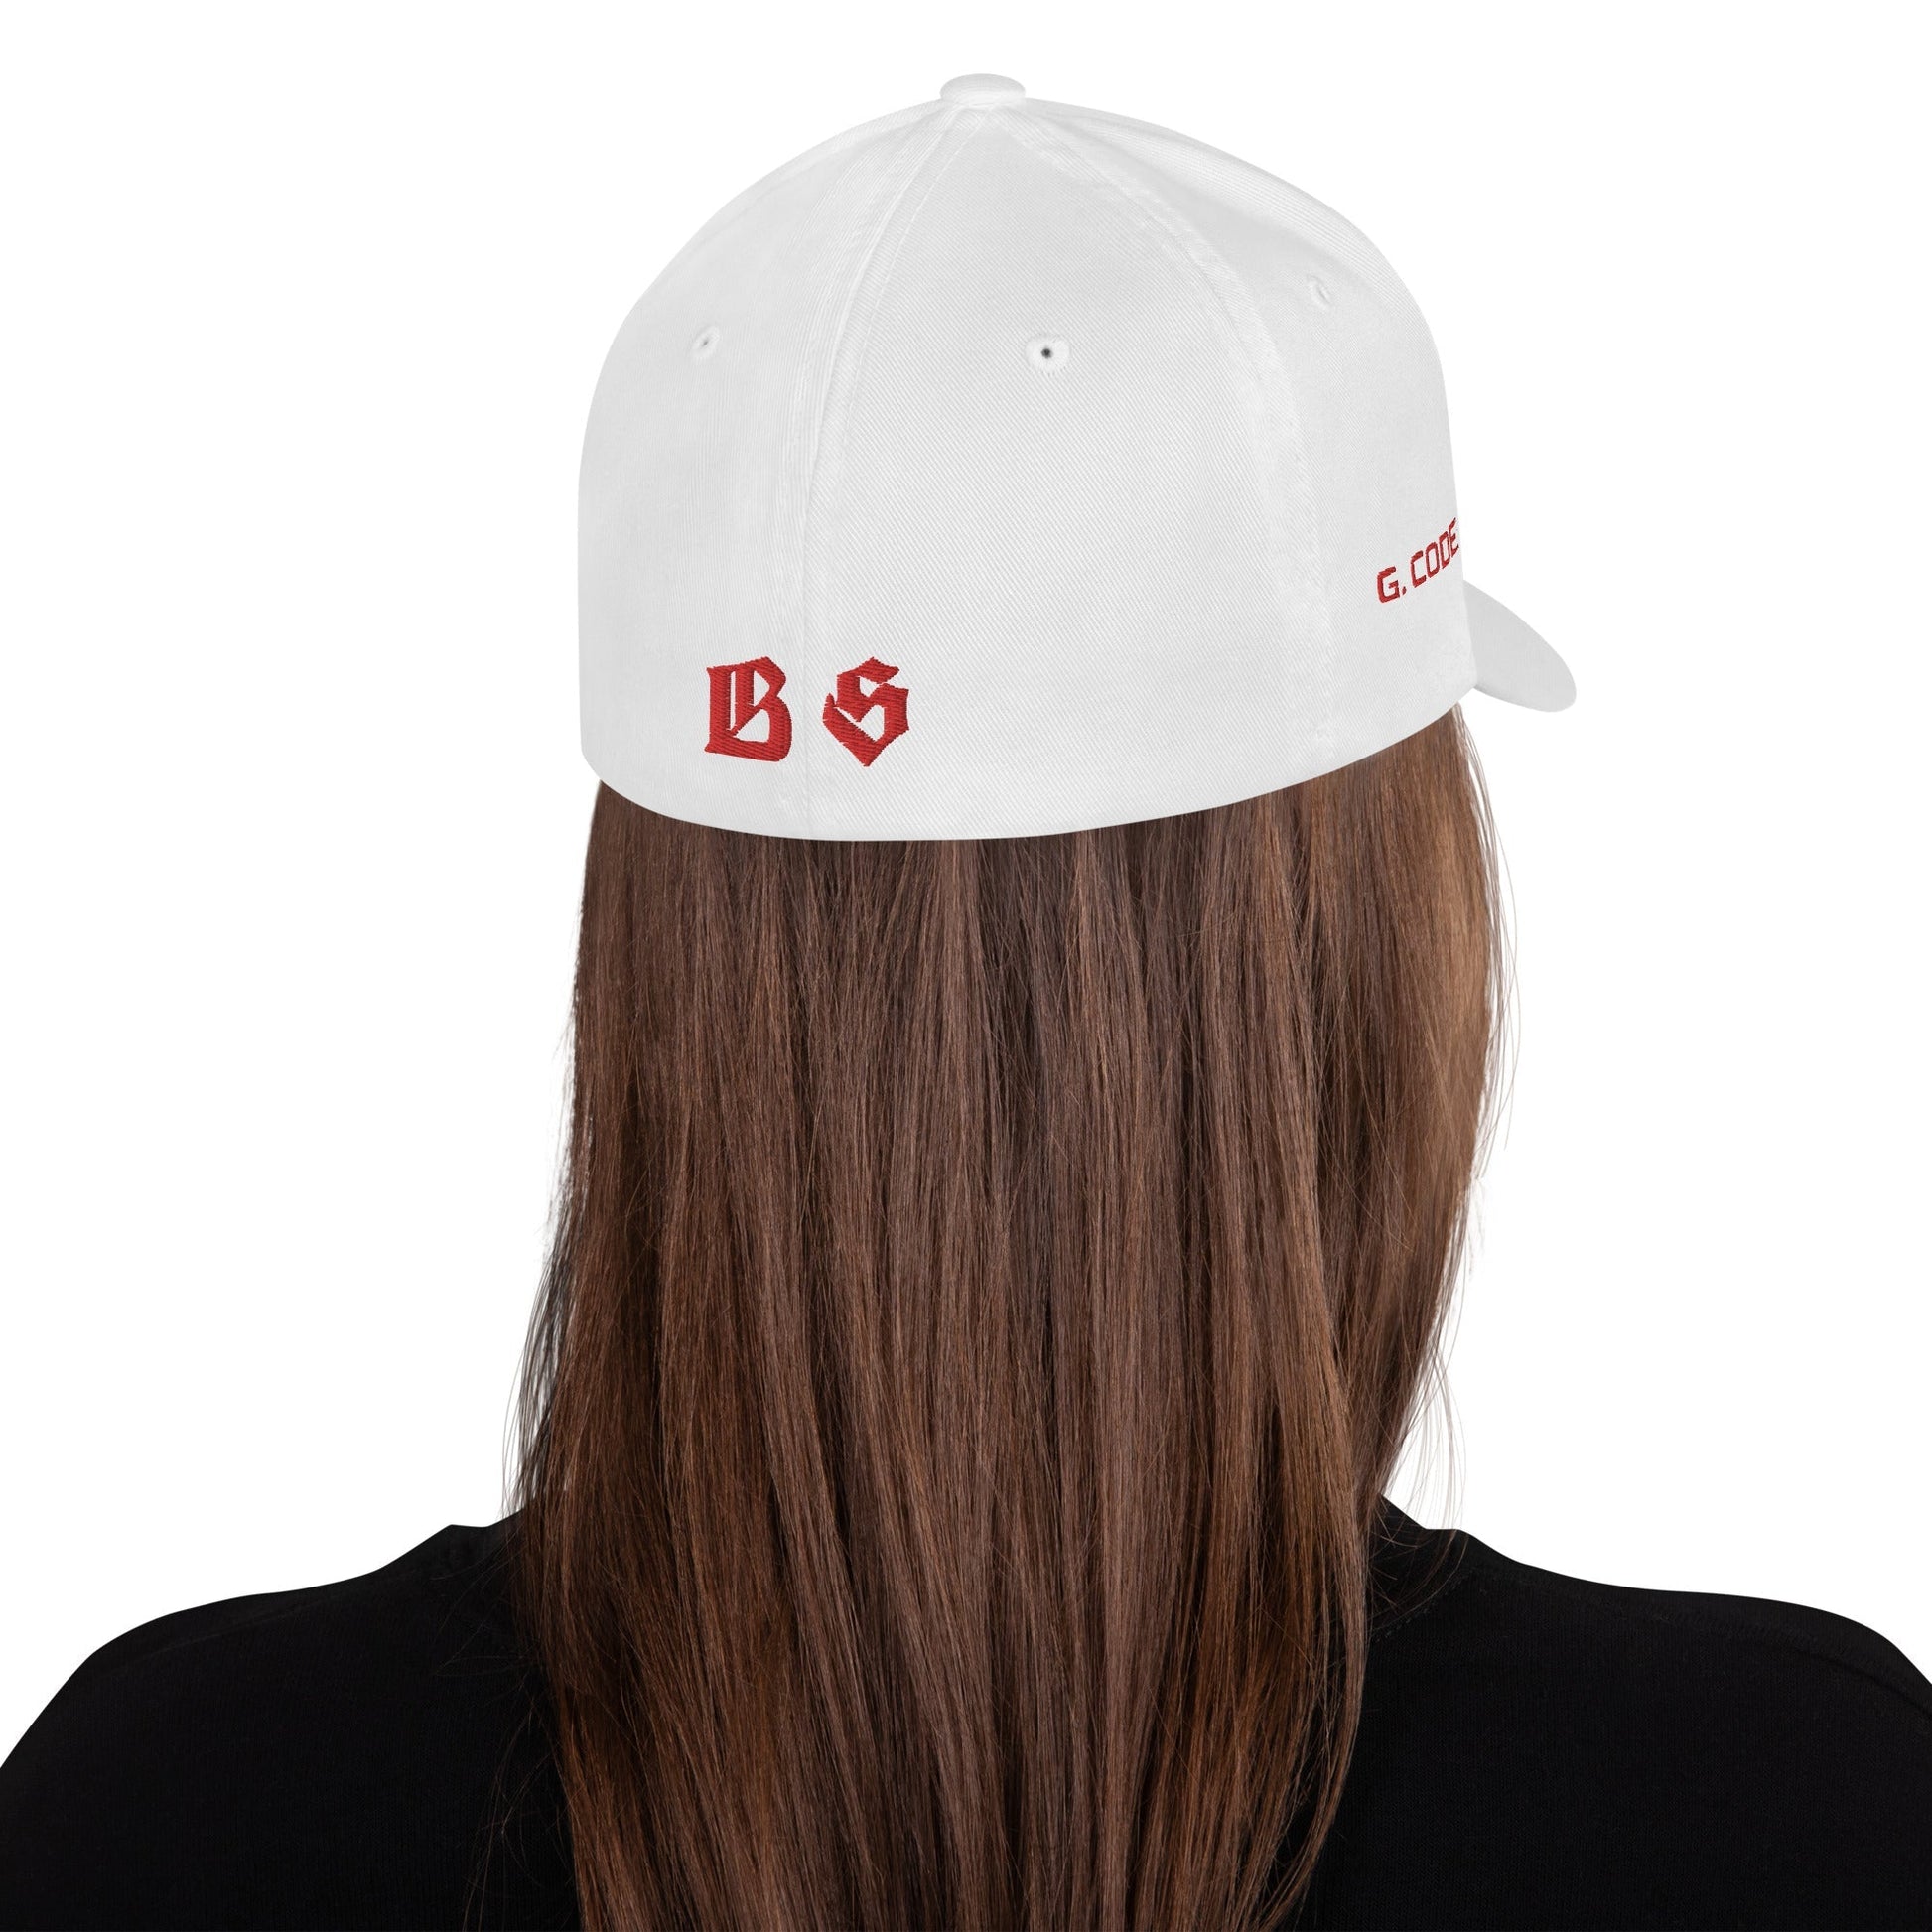 BS CITY Nürnberg Crew Member Premium Red DAD CAP - BLOODY-STREETS.DE Streetwear Herren und Damen Hoodies, T-Shirts, Pullis